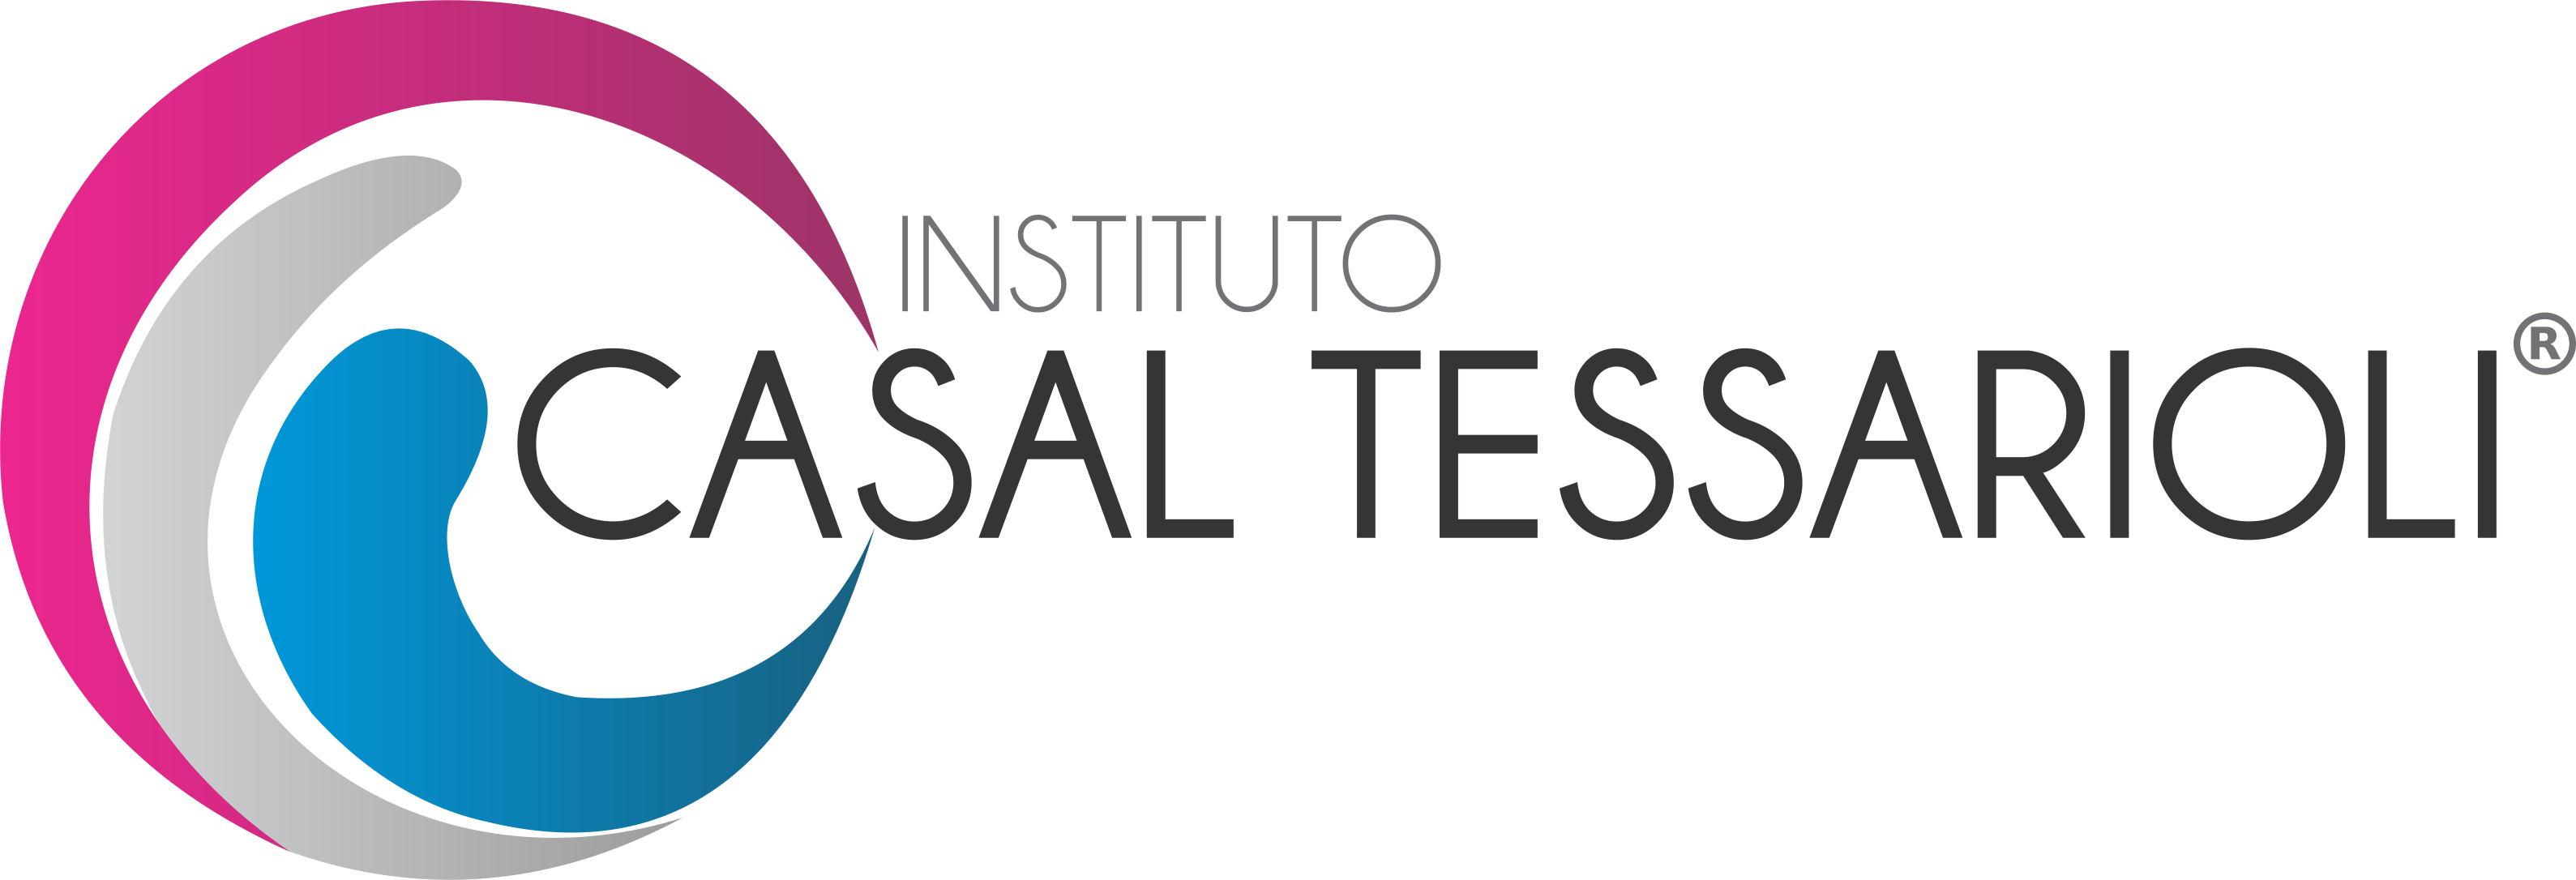 logo Instituto Casal Tessarioli